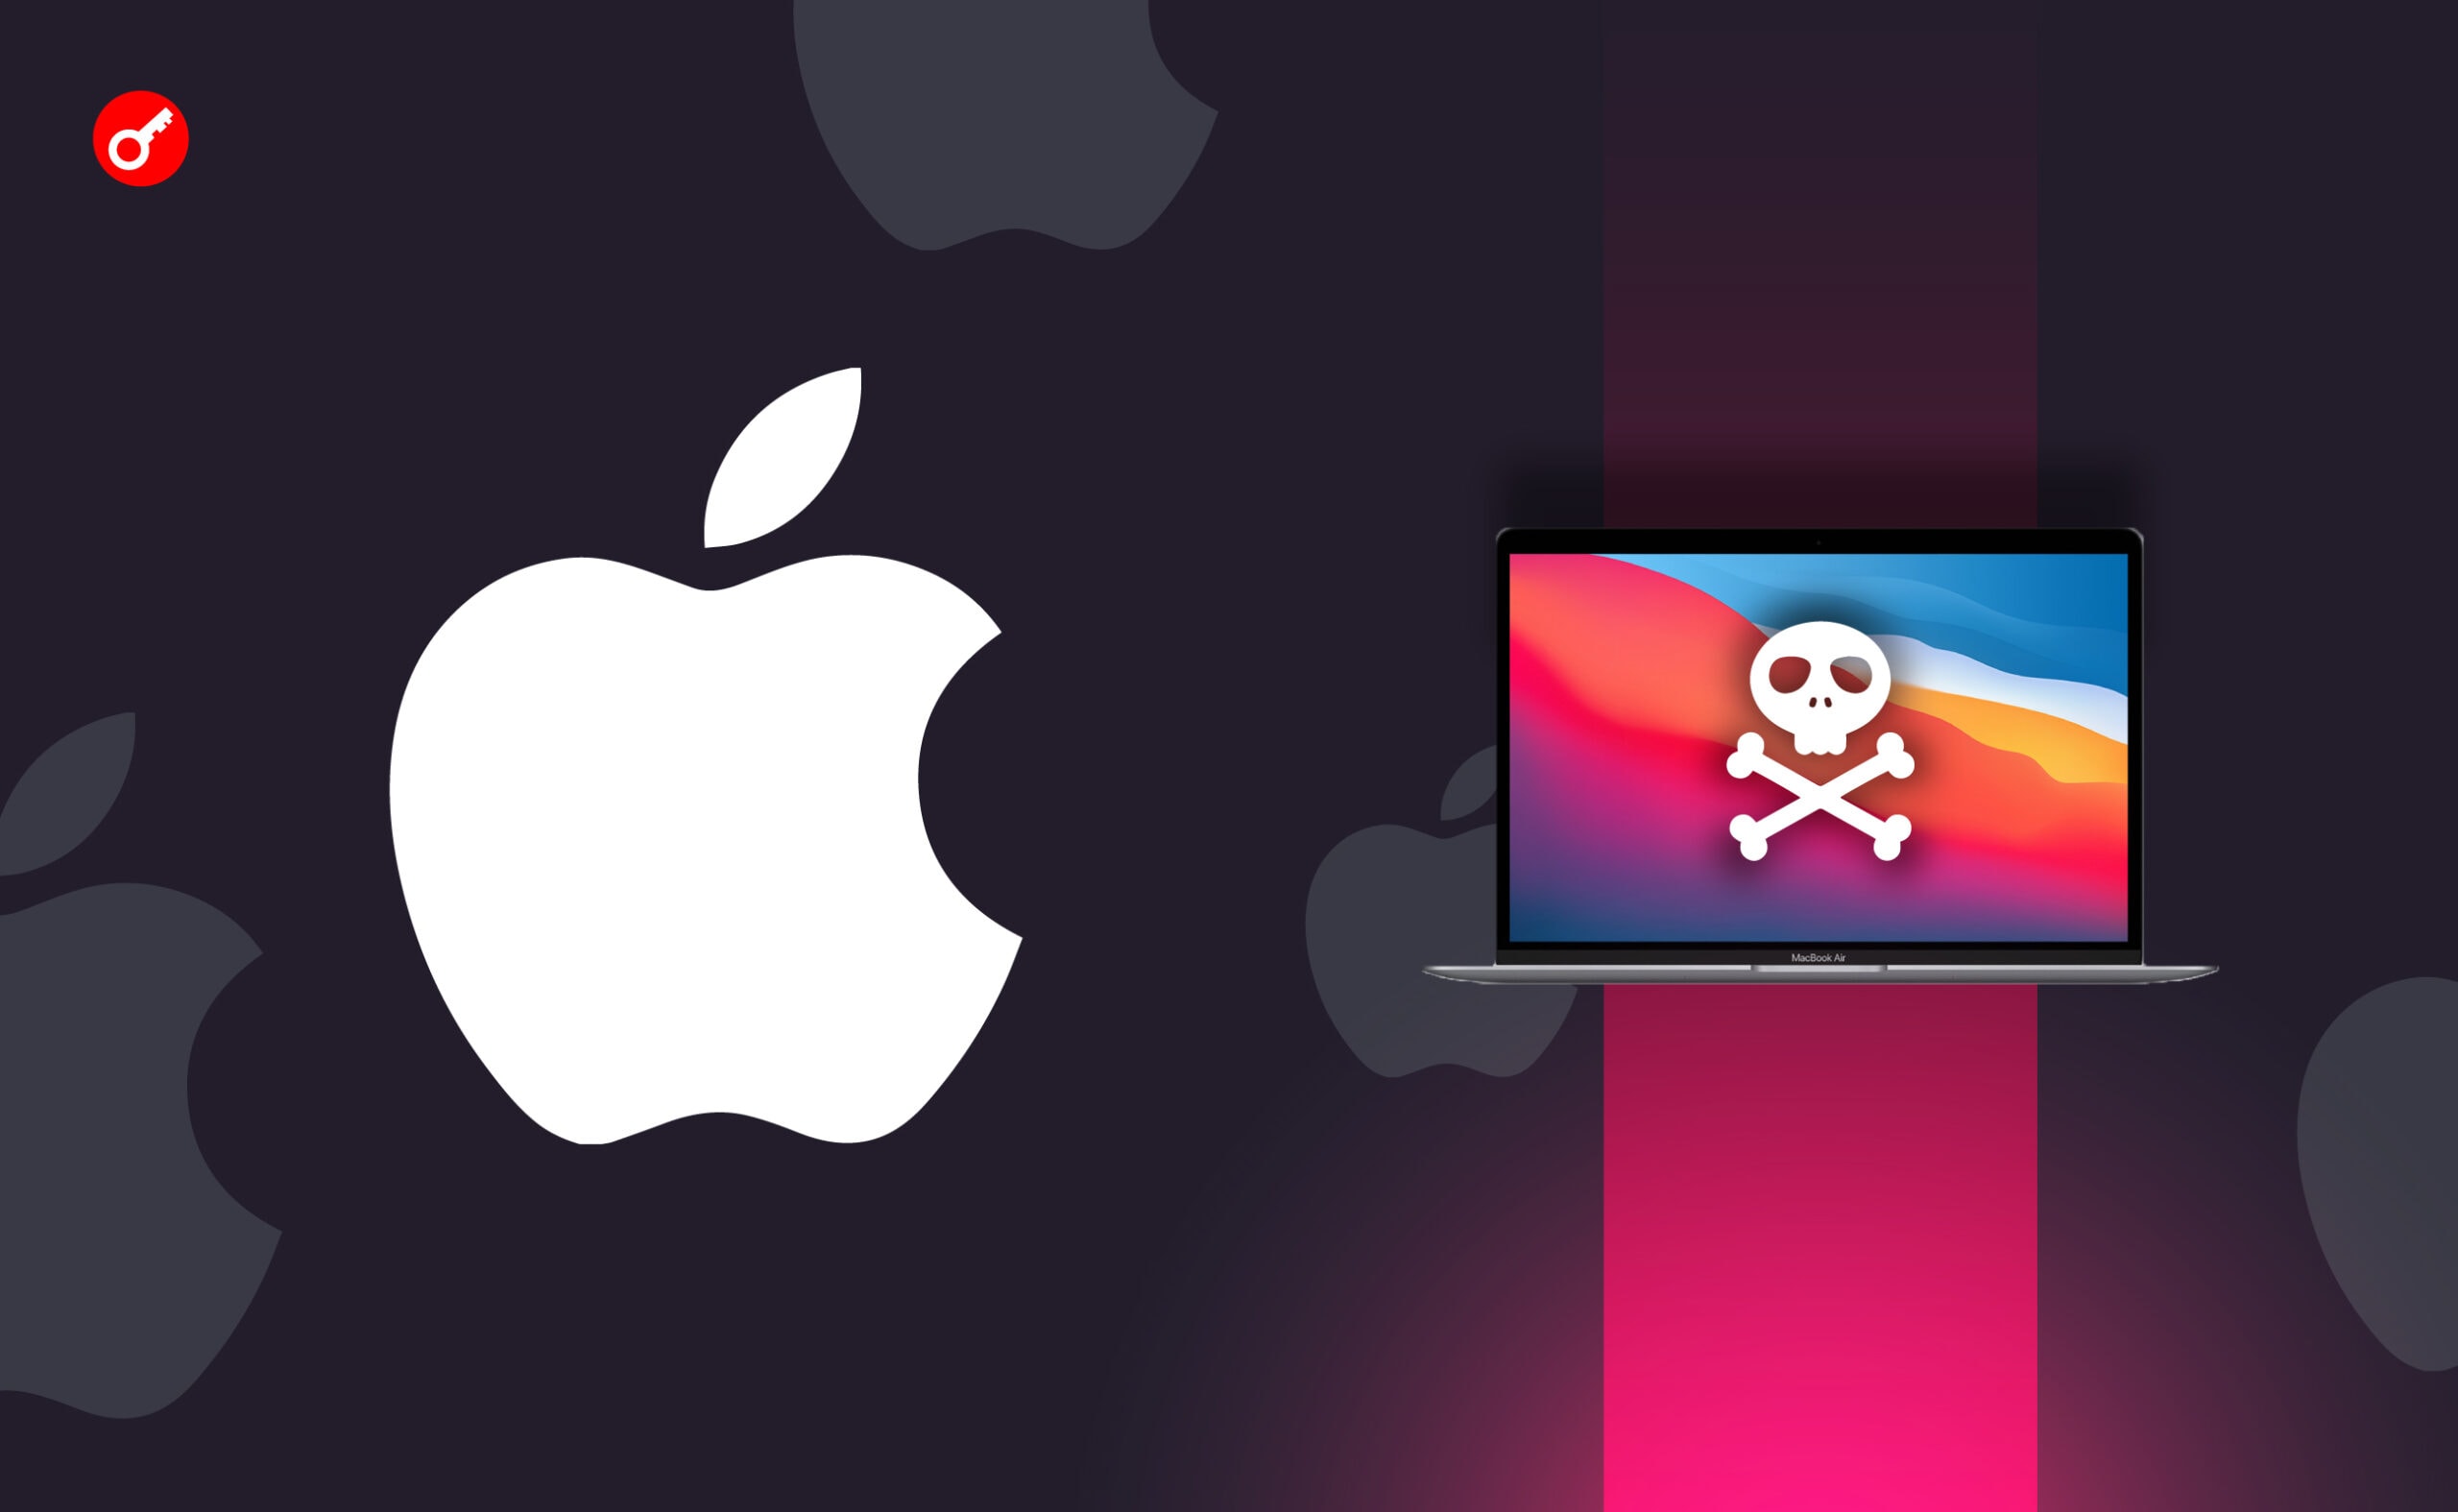 Эксперты обнаружили новое вредоносное ПО на Apple macOS. Заглавный коллаж новости.